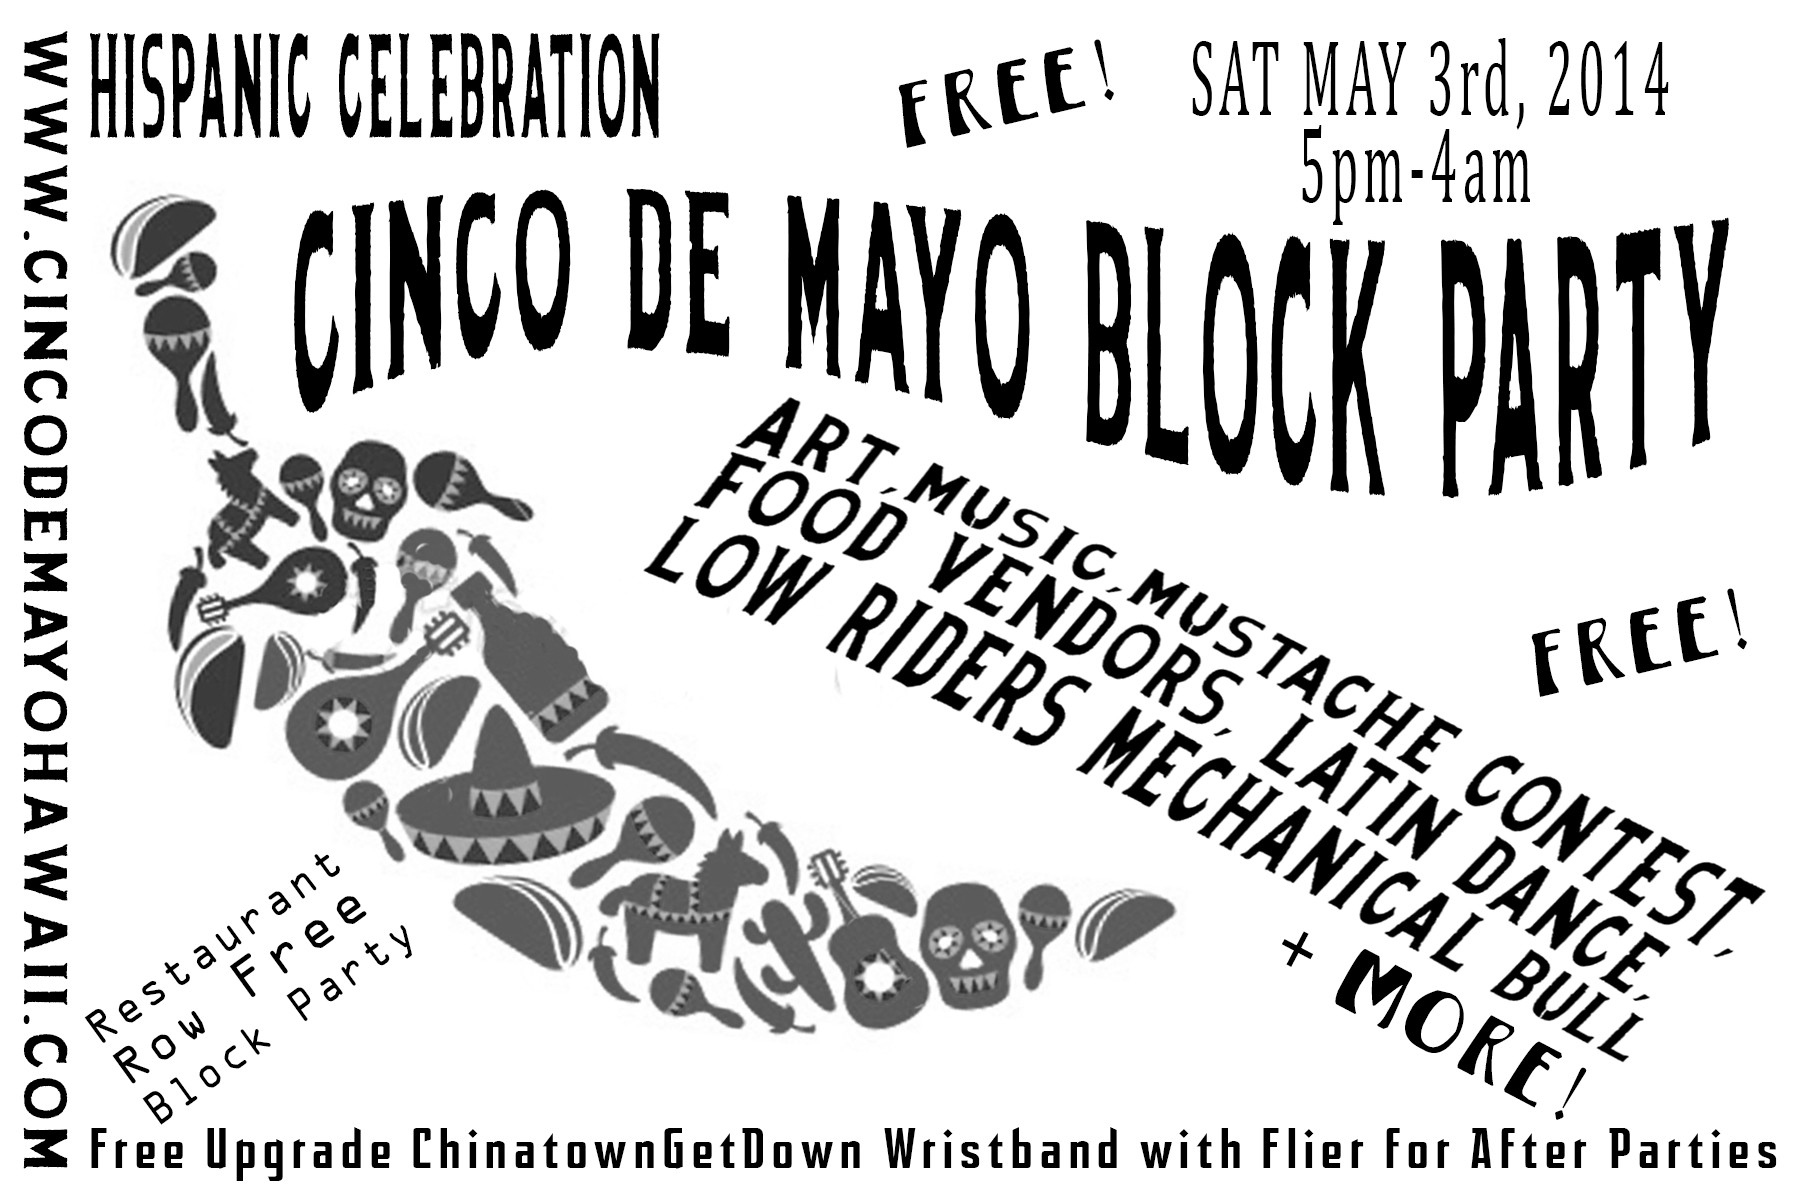 Cinco De Mayo Block Party
 Buy Tickets to Cinco De Mayo Block Party 5pm in Honolulu